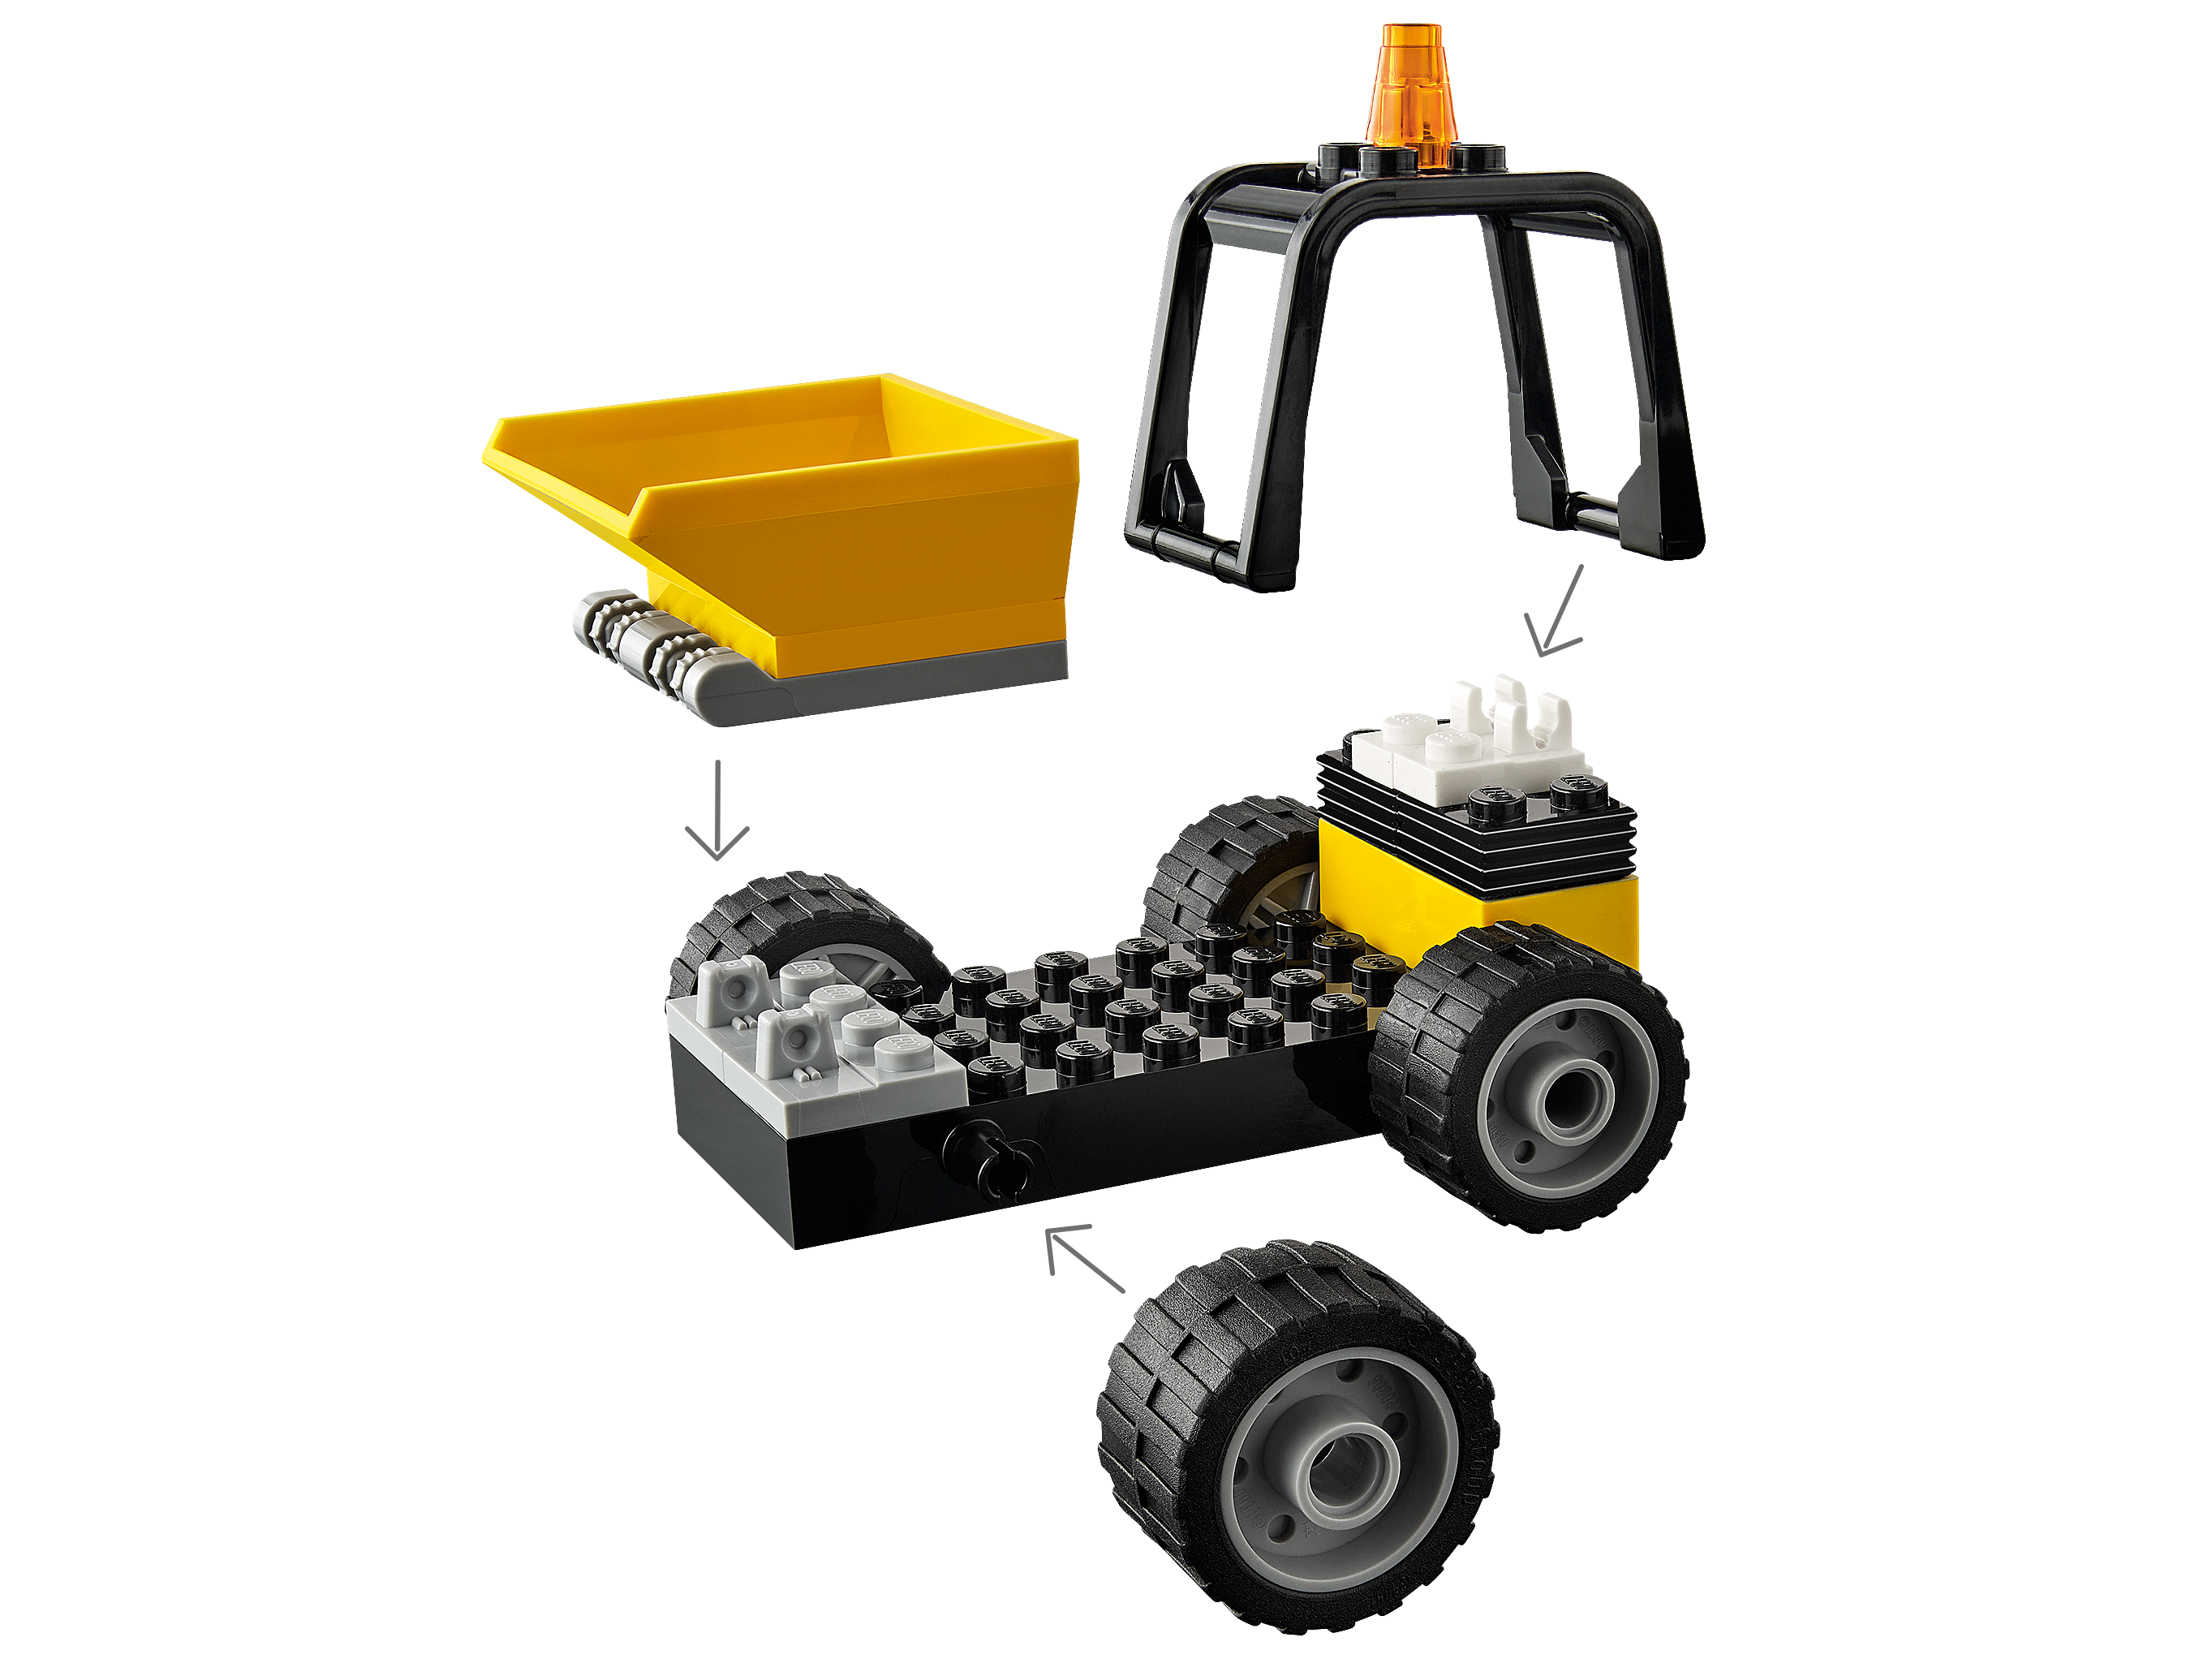 LEGO City 60284 Super Veicoli Ruspa da Cantiere, Veicolo con Caricatore  Frontale per Bambini e Bambine dai 4 Anni in su - LEGO - City - Mezzi  pesanti - Giocattoli